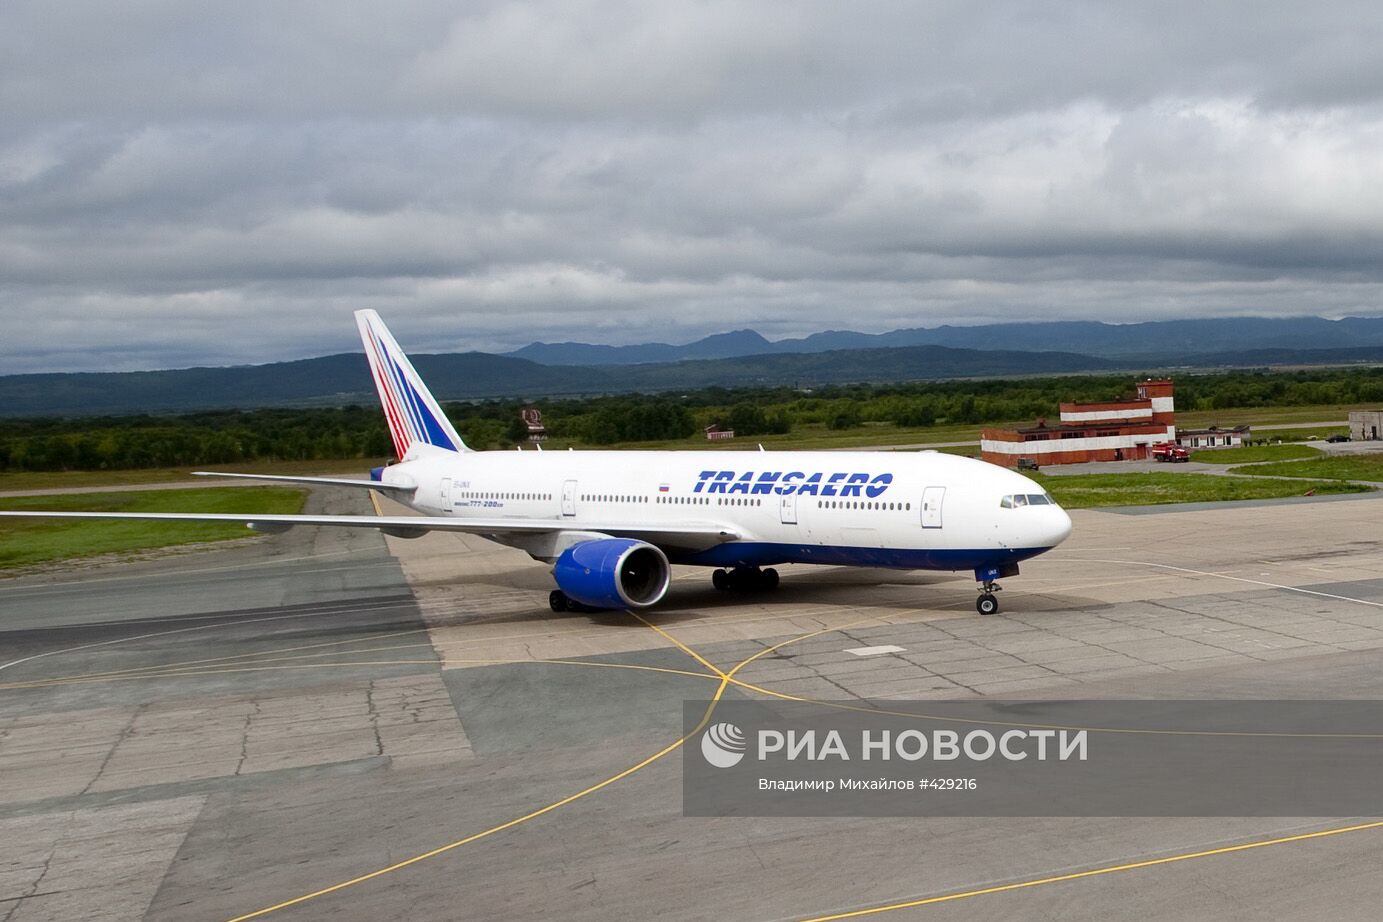 Boeing 777-200 совершил первый рейс: "Москва - Южно-Сахалинск"